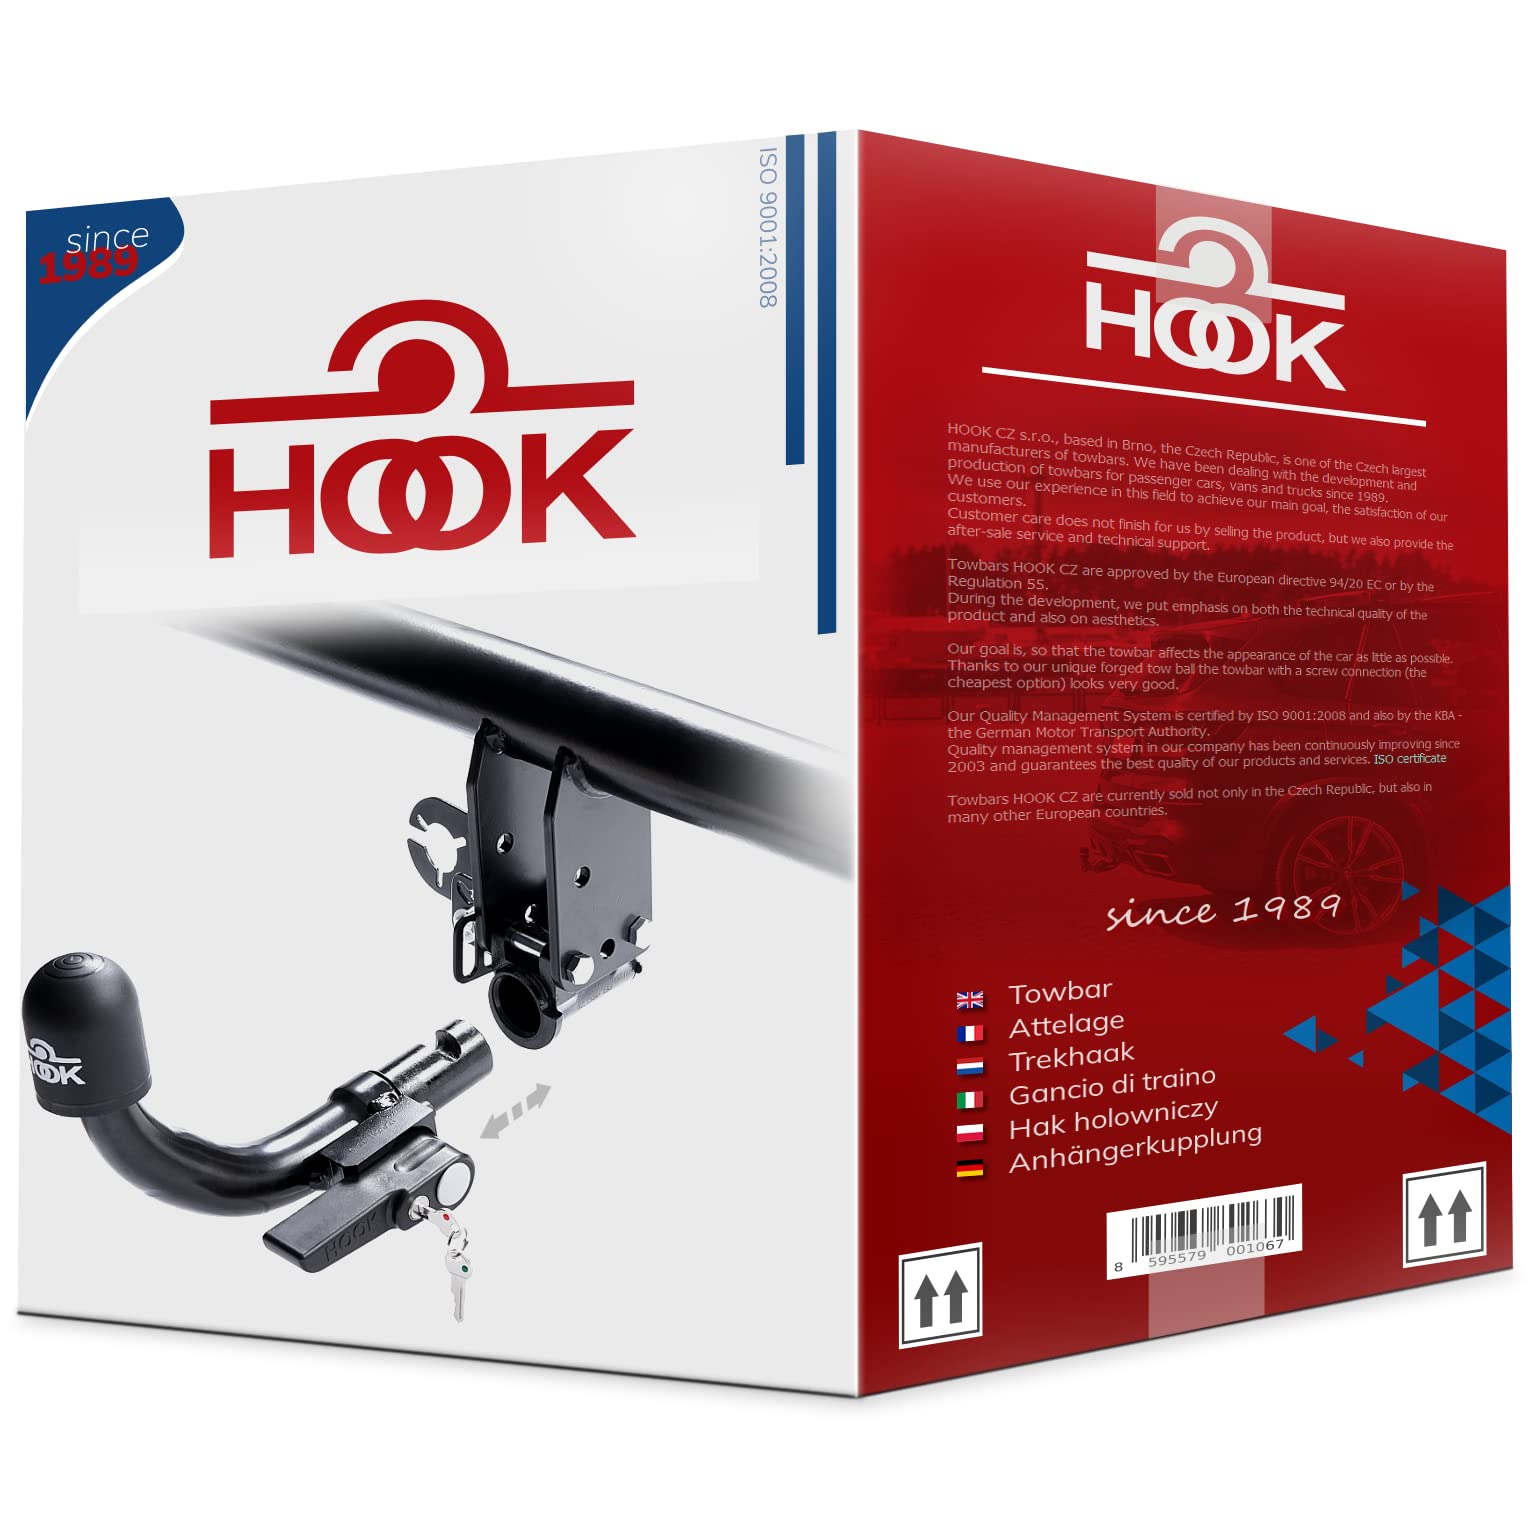 Hook horizontal abnehmbare AHK Anhängerkupplung für Suzuki SX4 I 05.2006-2013 + universell Elektrosatz 7-polig von Hook